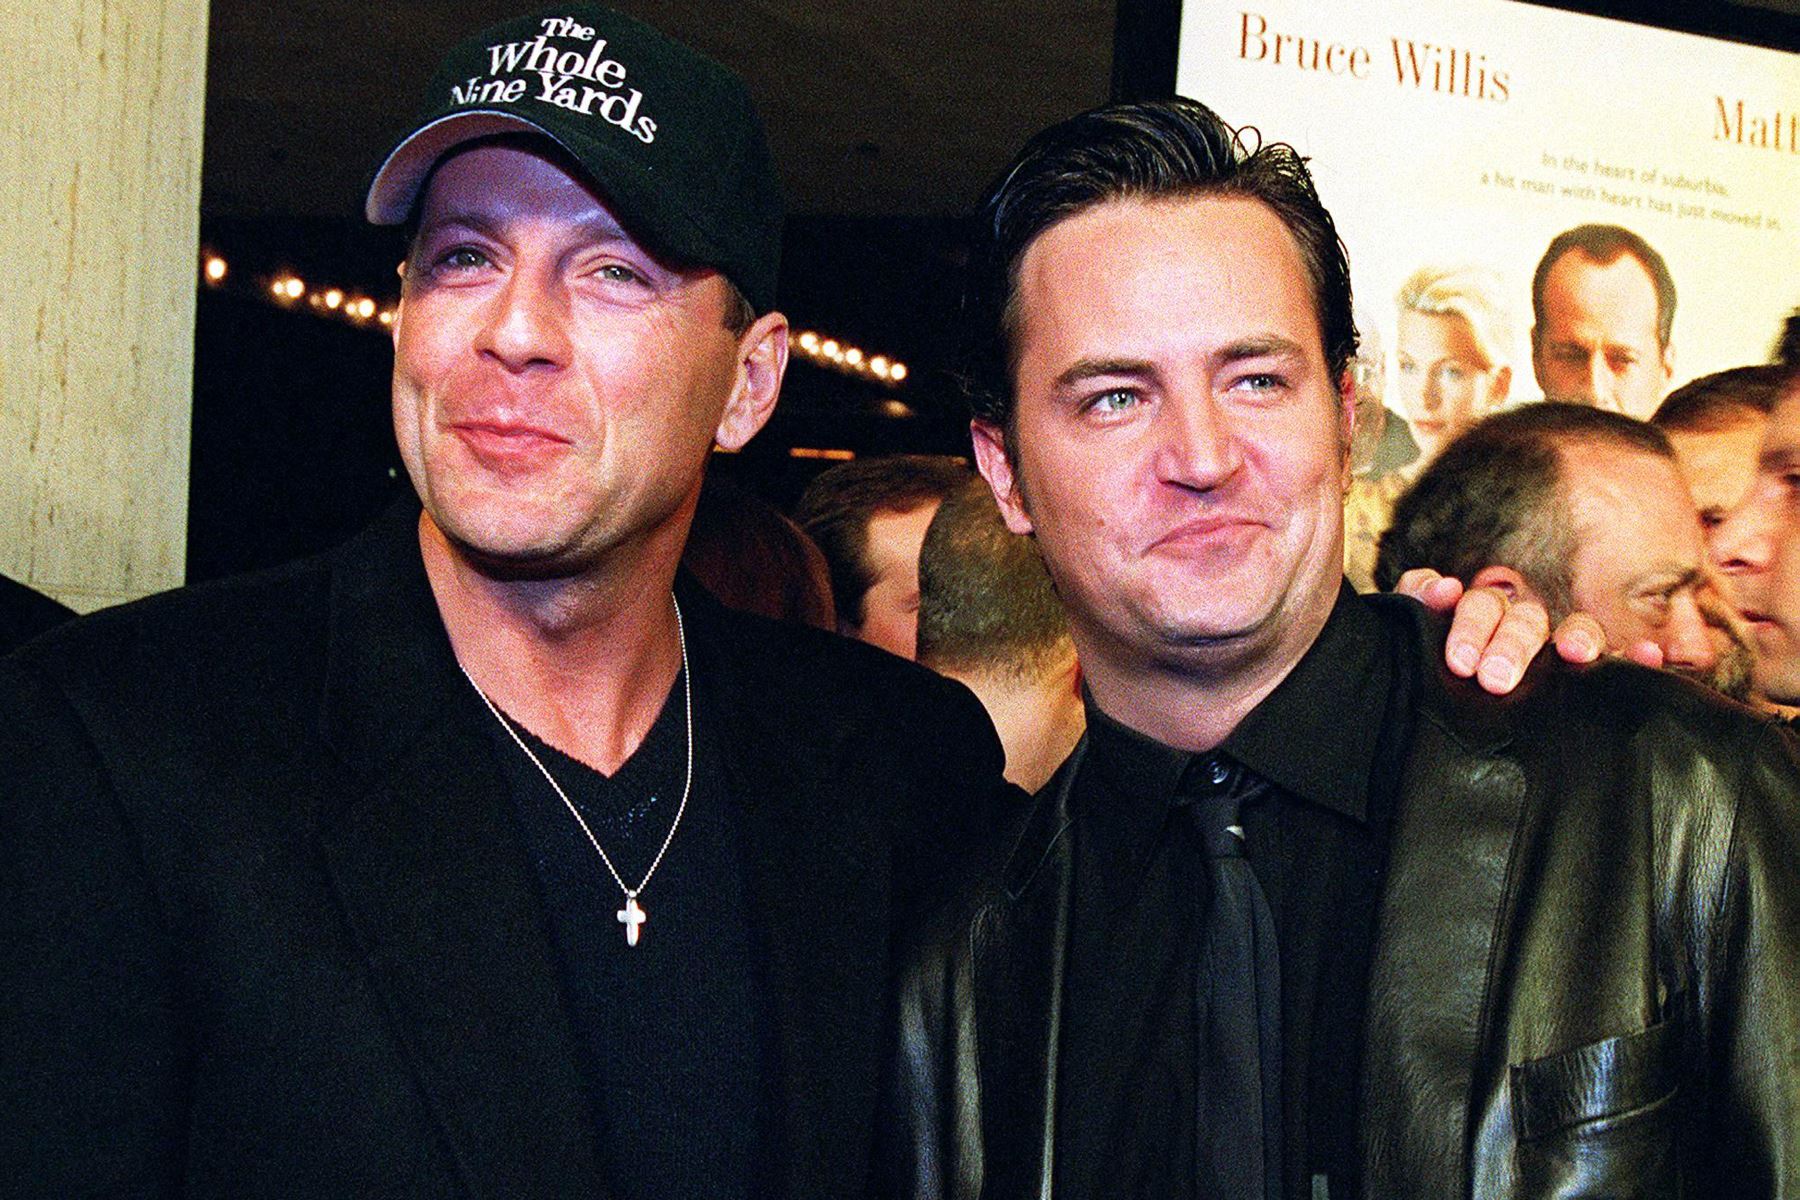 Los actores estadounidenses Bruce Willis (L) y Matthew Perry (R) llegan al estreno de su nueva película "The Whole Nine Yards" en Los Ángeles, el 17 de febrero de 2000.
Foto: AFP